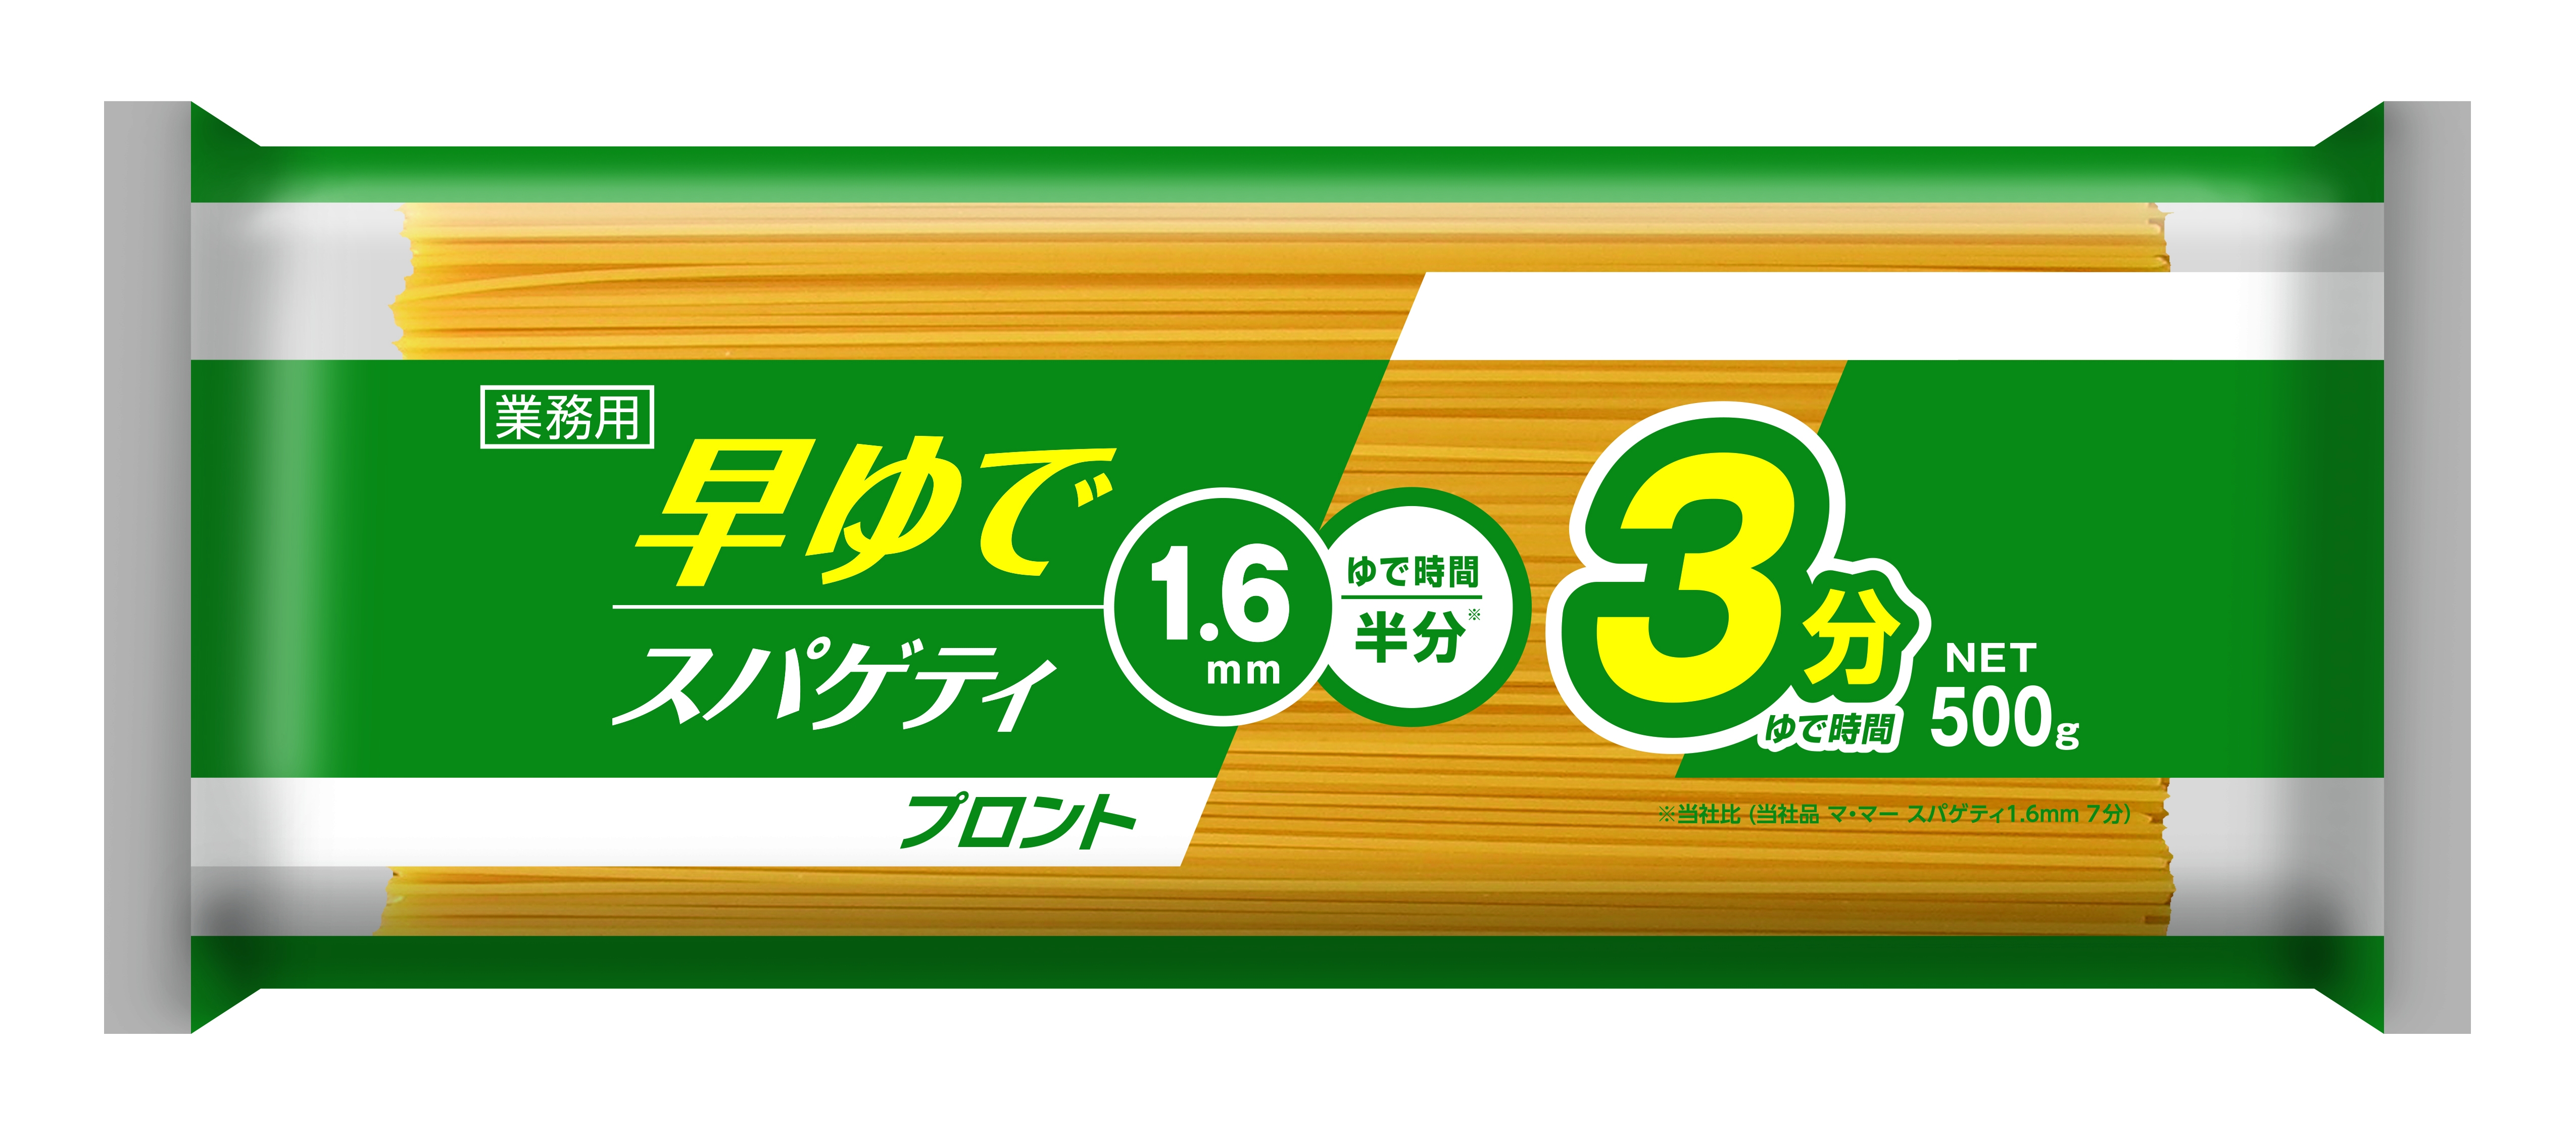 日清フーズ ２０２０年春 業務用製品新発売「早ゆでスパゲティ